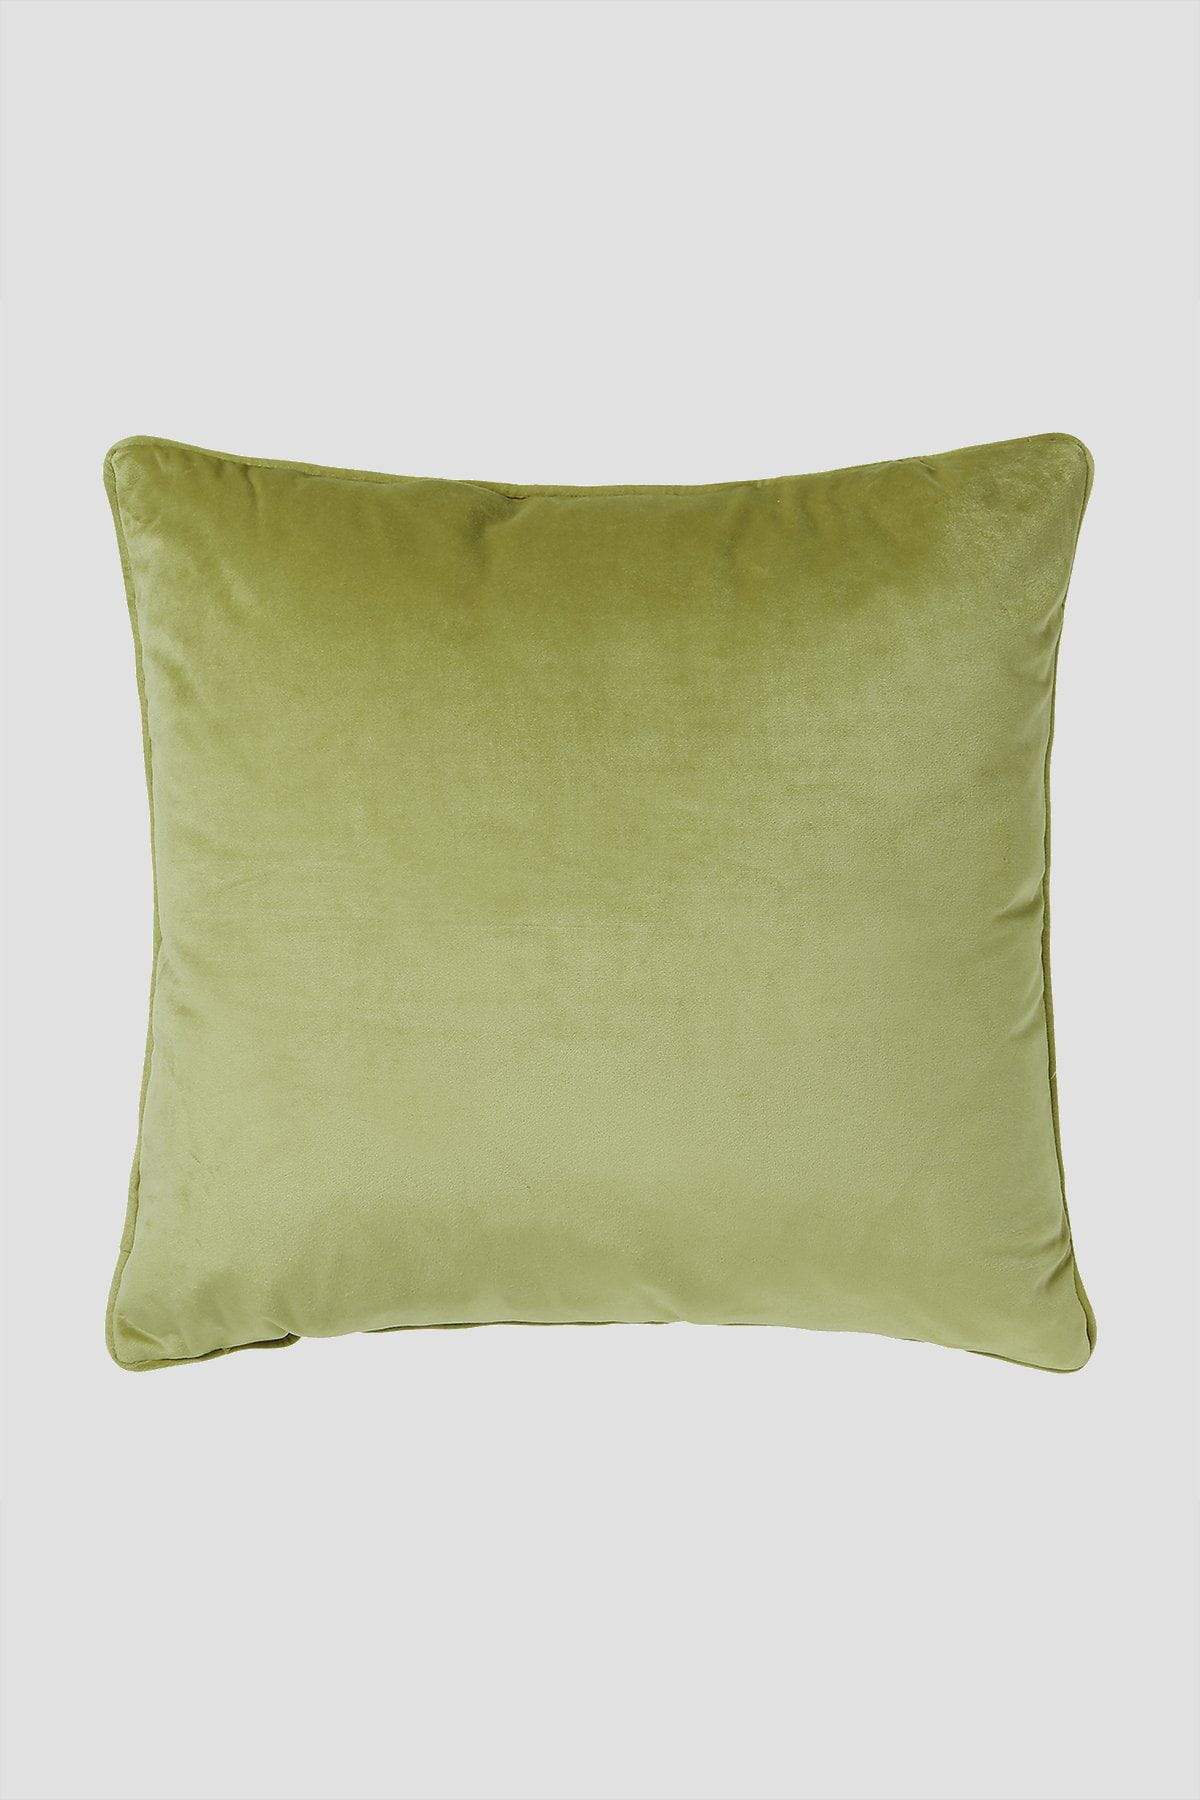 Carraig Donn Bellini 45x45cm Cushion in Moss